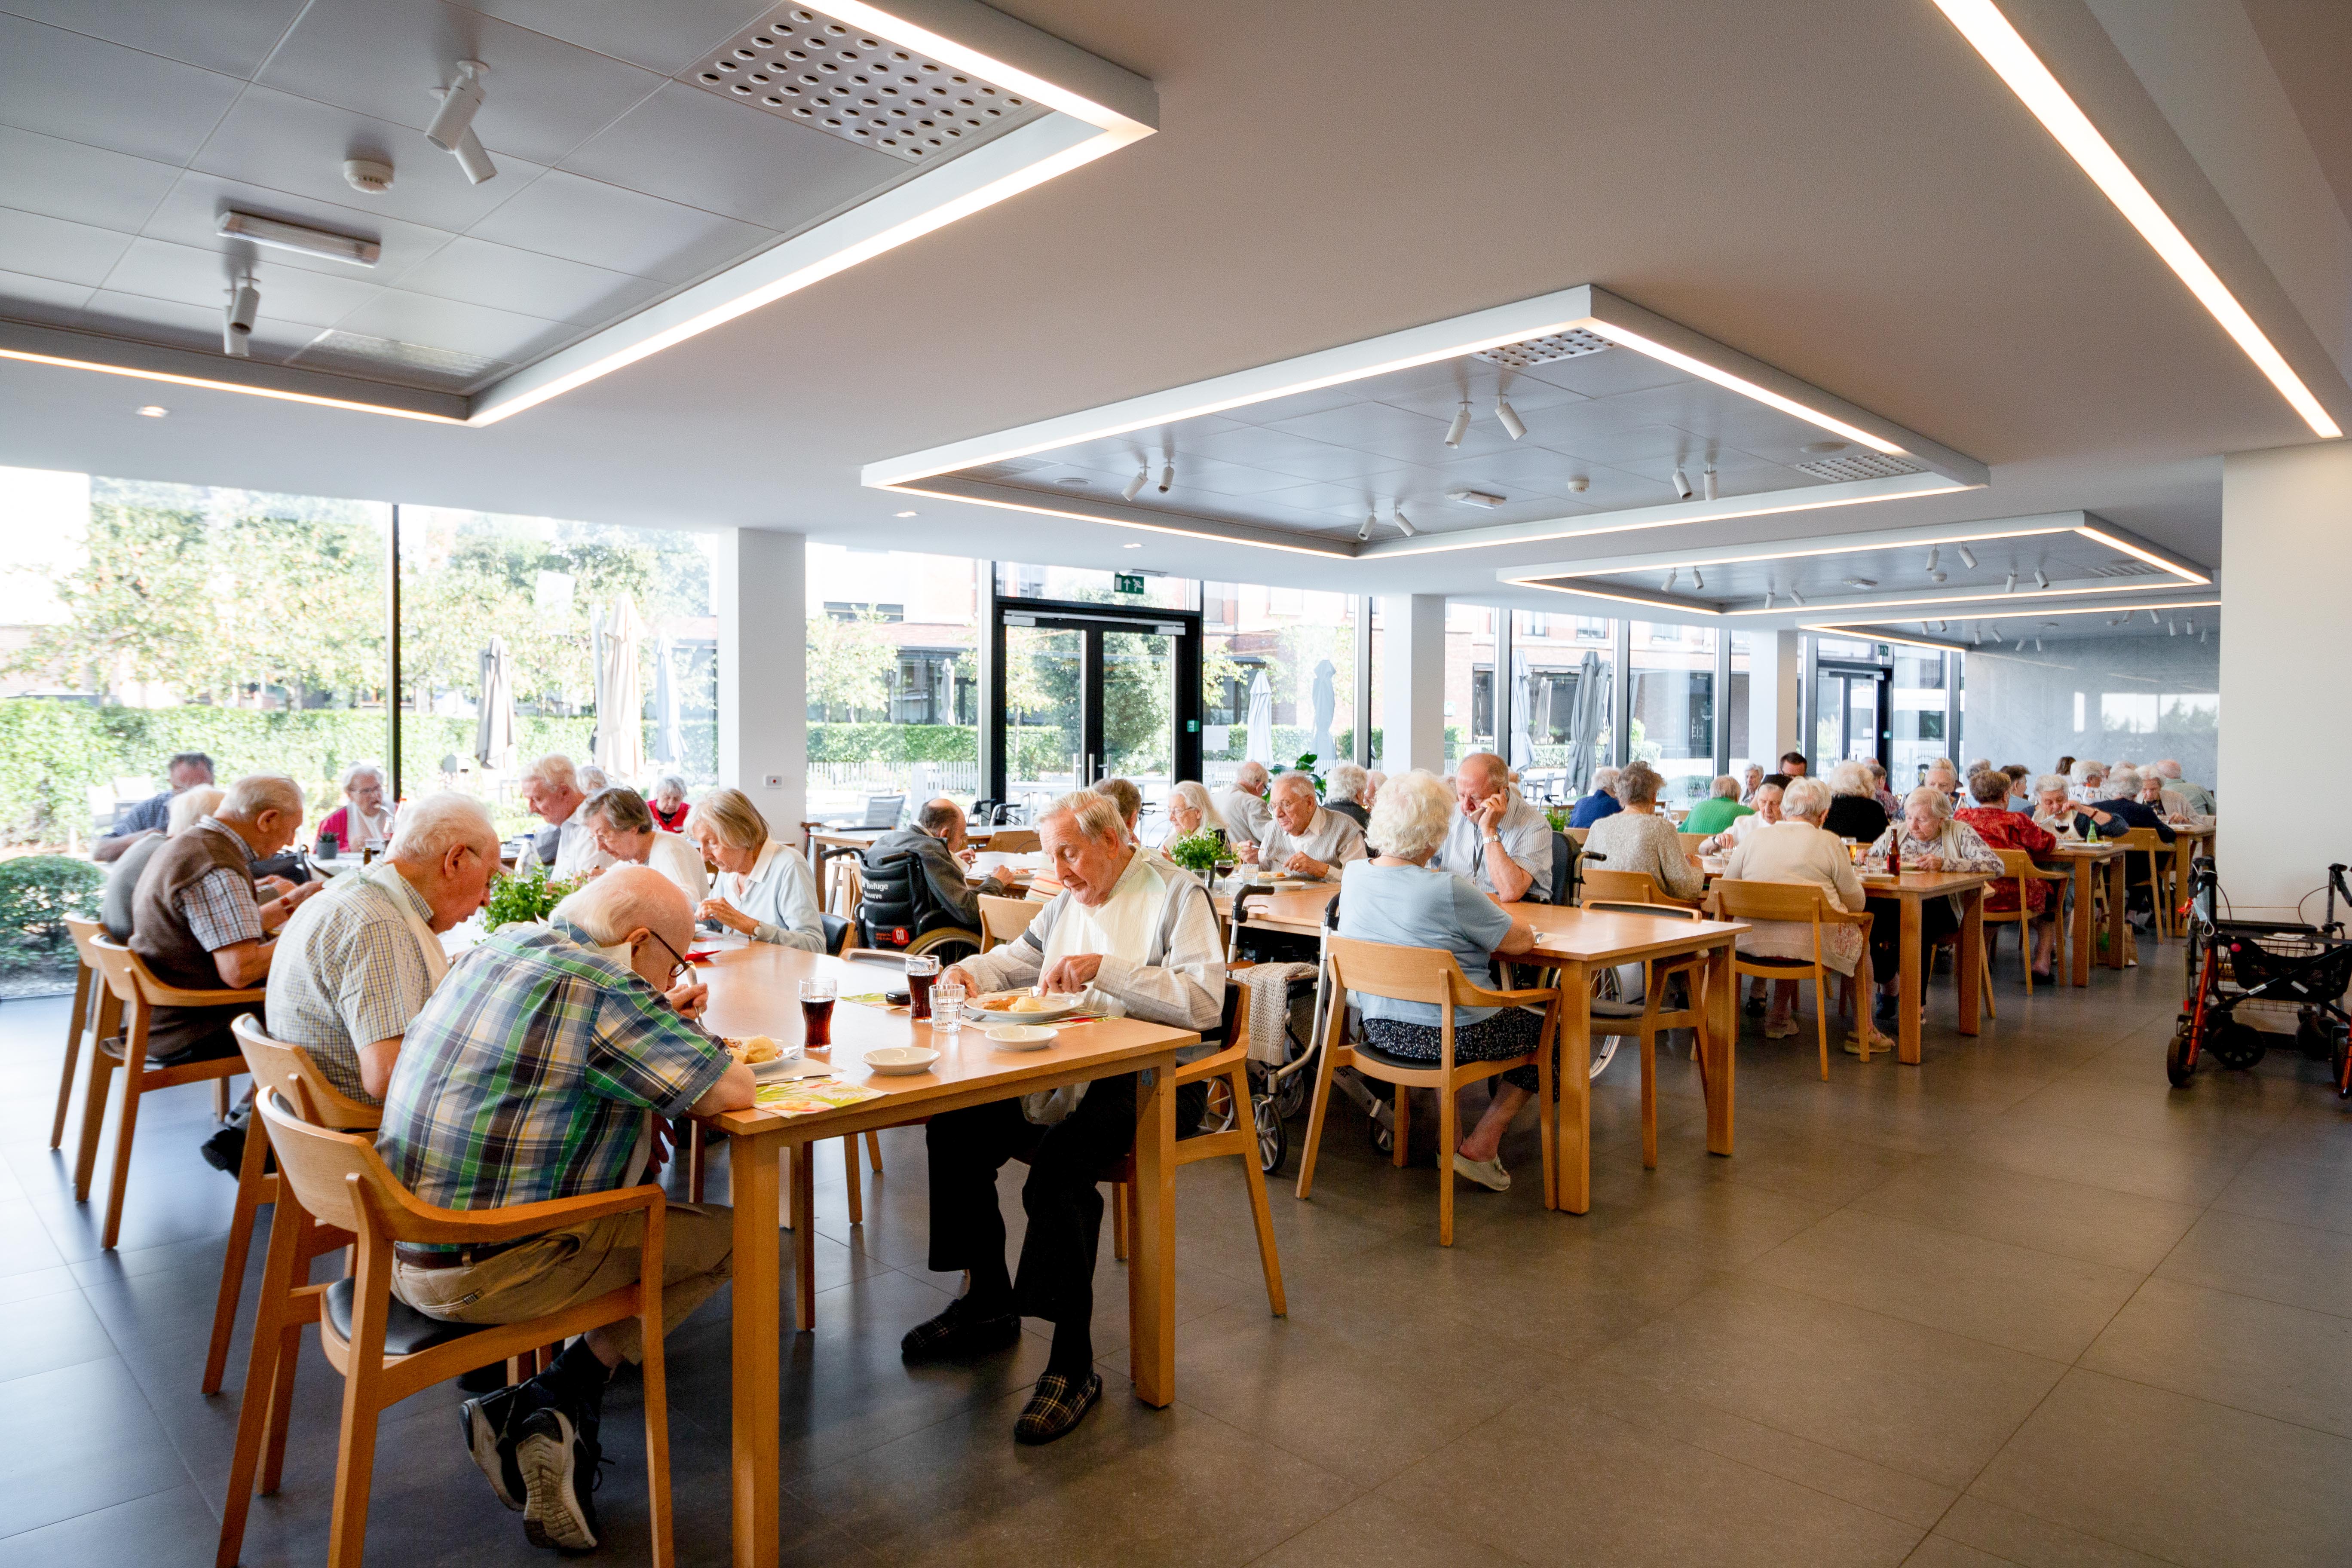 Bewoners genieten van hun middagmal in het restaurant van woonzorgcentrum de Refuge in Gent